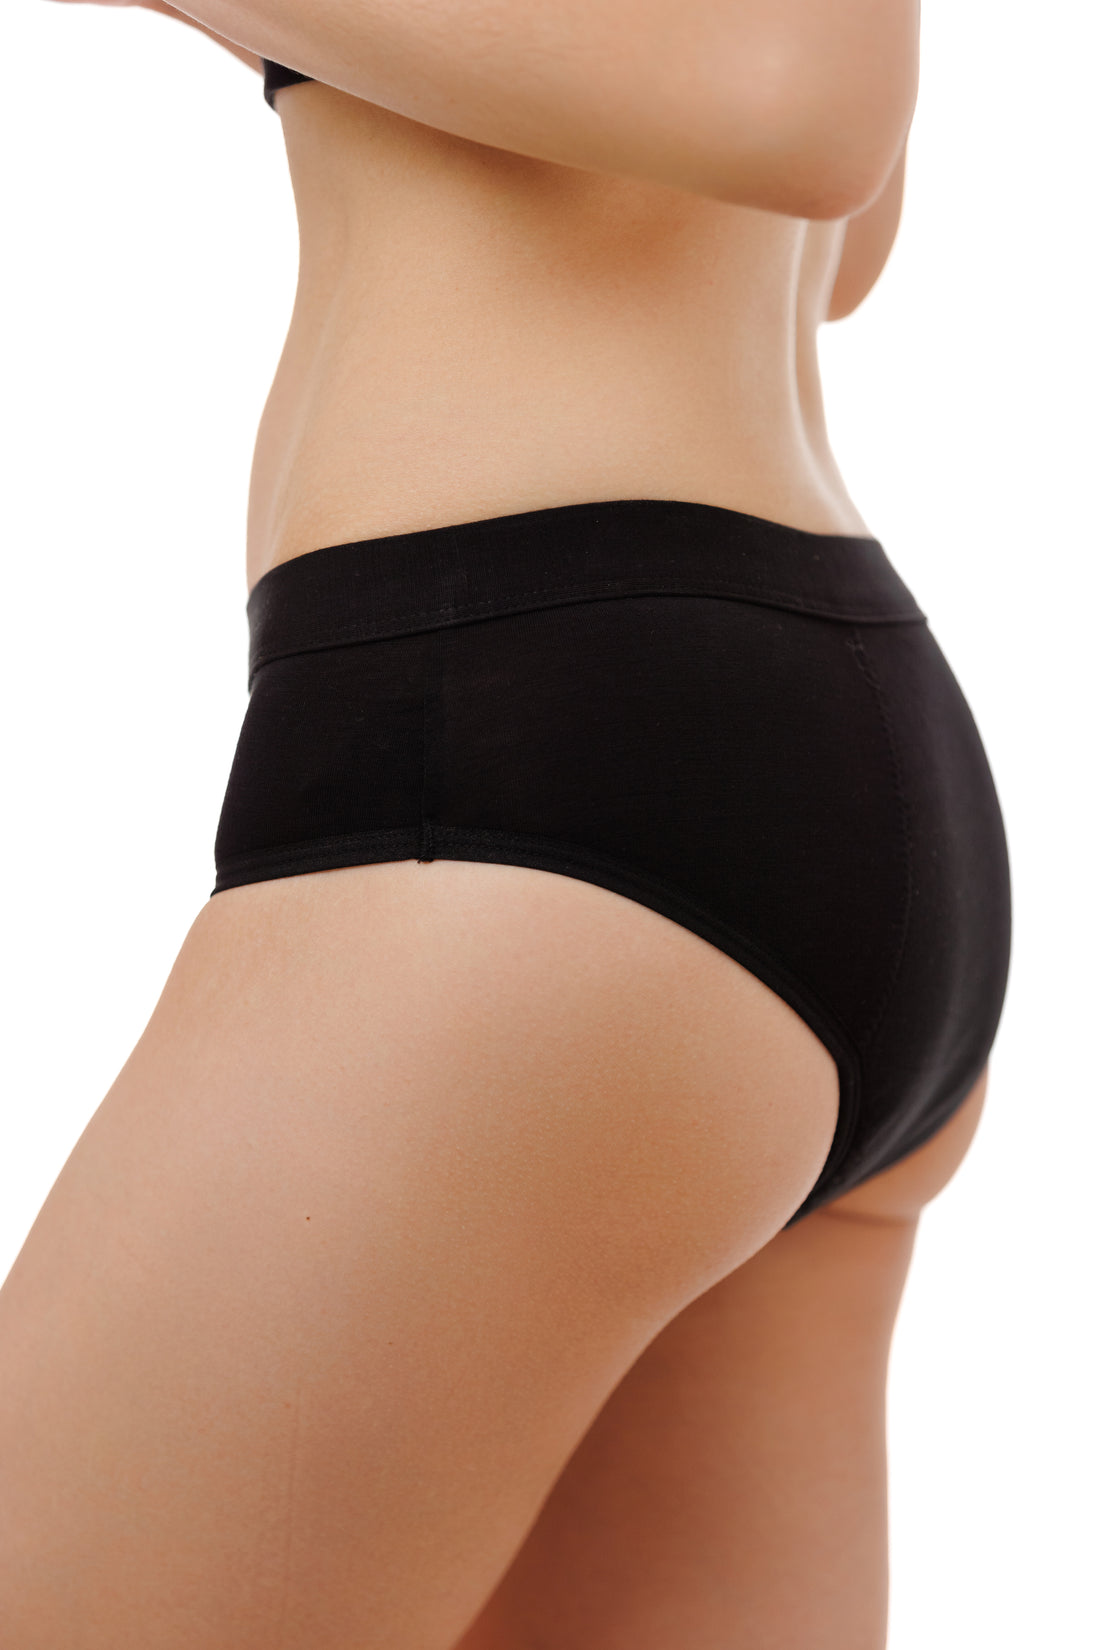 Culottes menstruelle Muscari pour Flux Moyen = 3 tampons - lot de 5 | Coloré